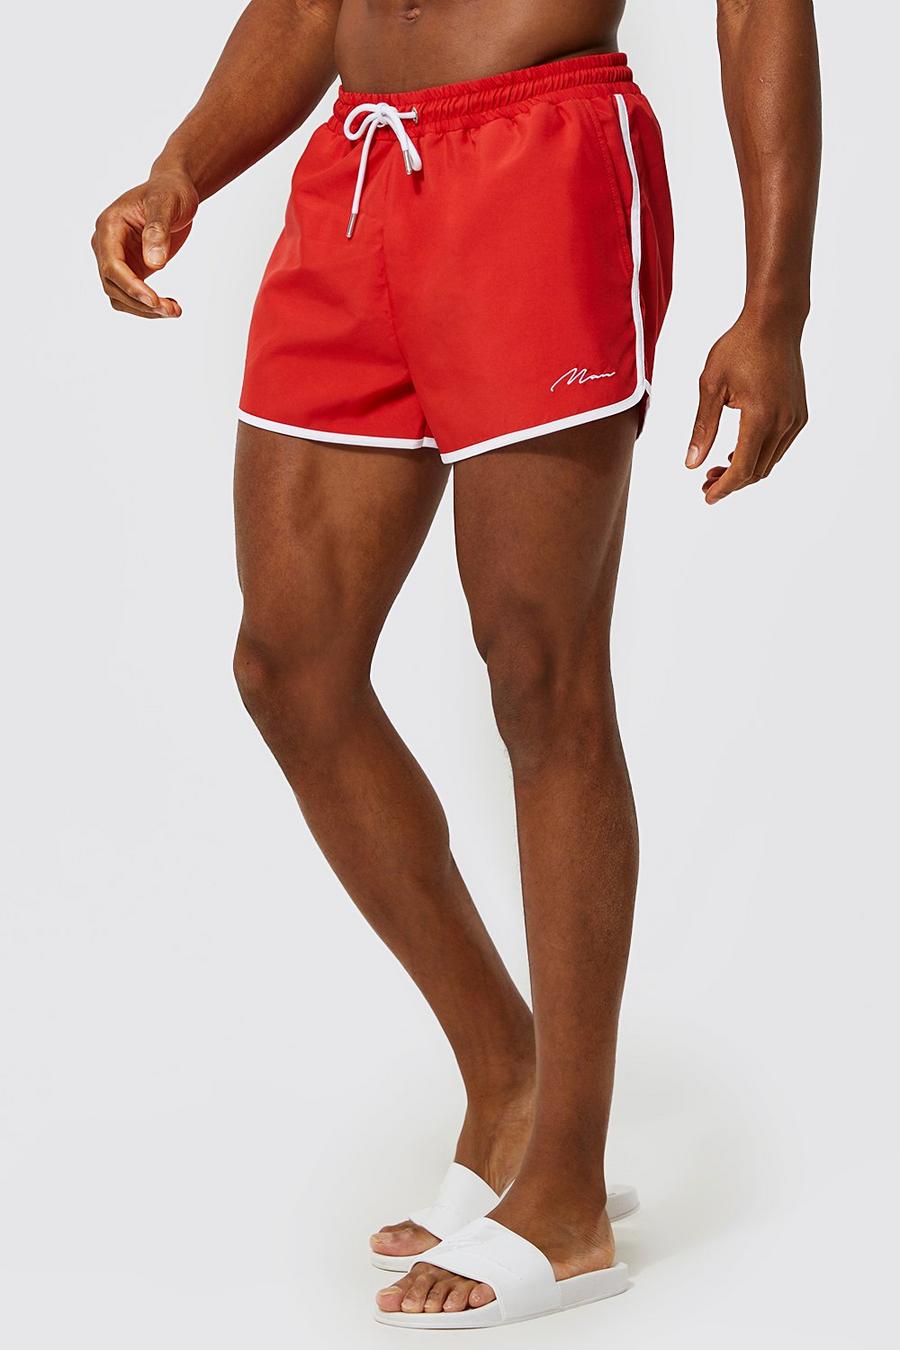 Red rojo שורט בגד ים בסגנון מכנסי ריצה עם חתימת Man מבד ממוחזר